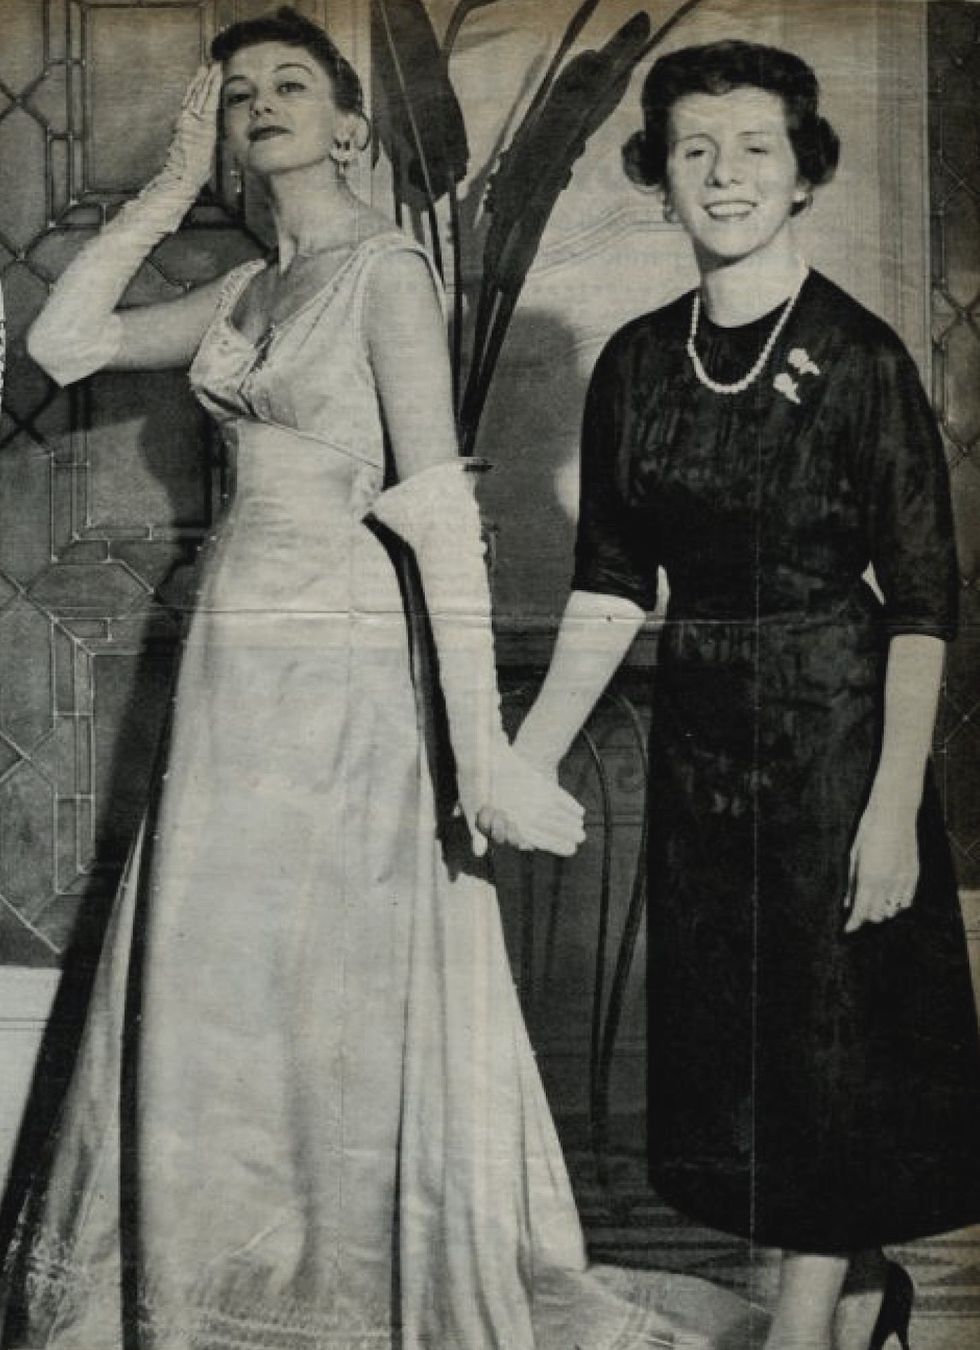 fernanda gattinoni ﻿﻿nel 1955, mentre veste la divisa della ﻿mademoiselle﻿, la figura professionale che consigliave le clienti e le aiutava a raffinare il loro gusto